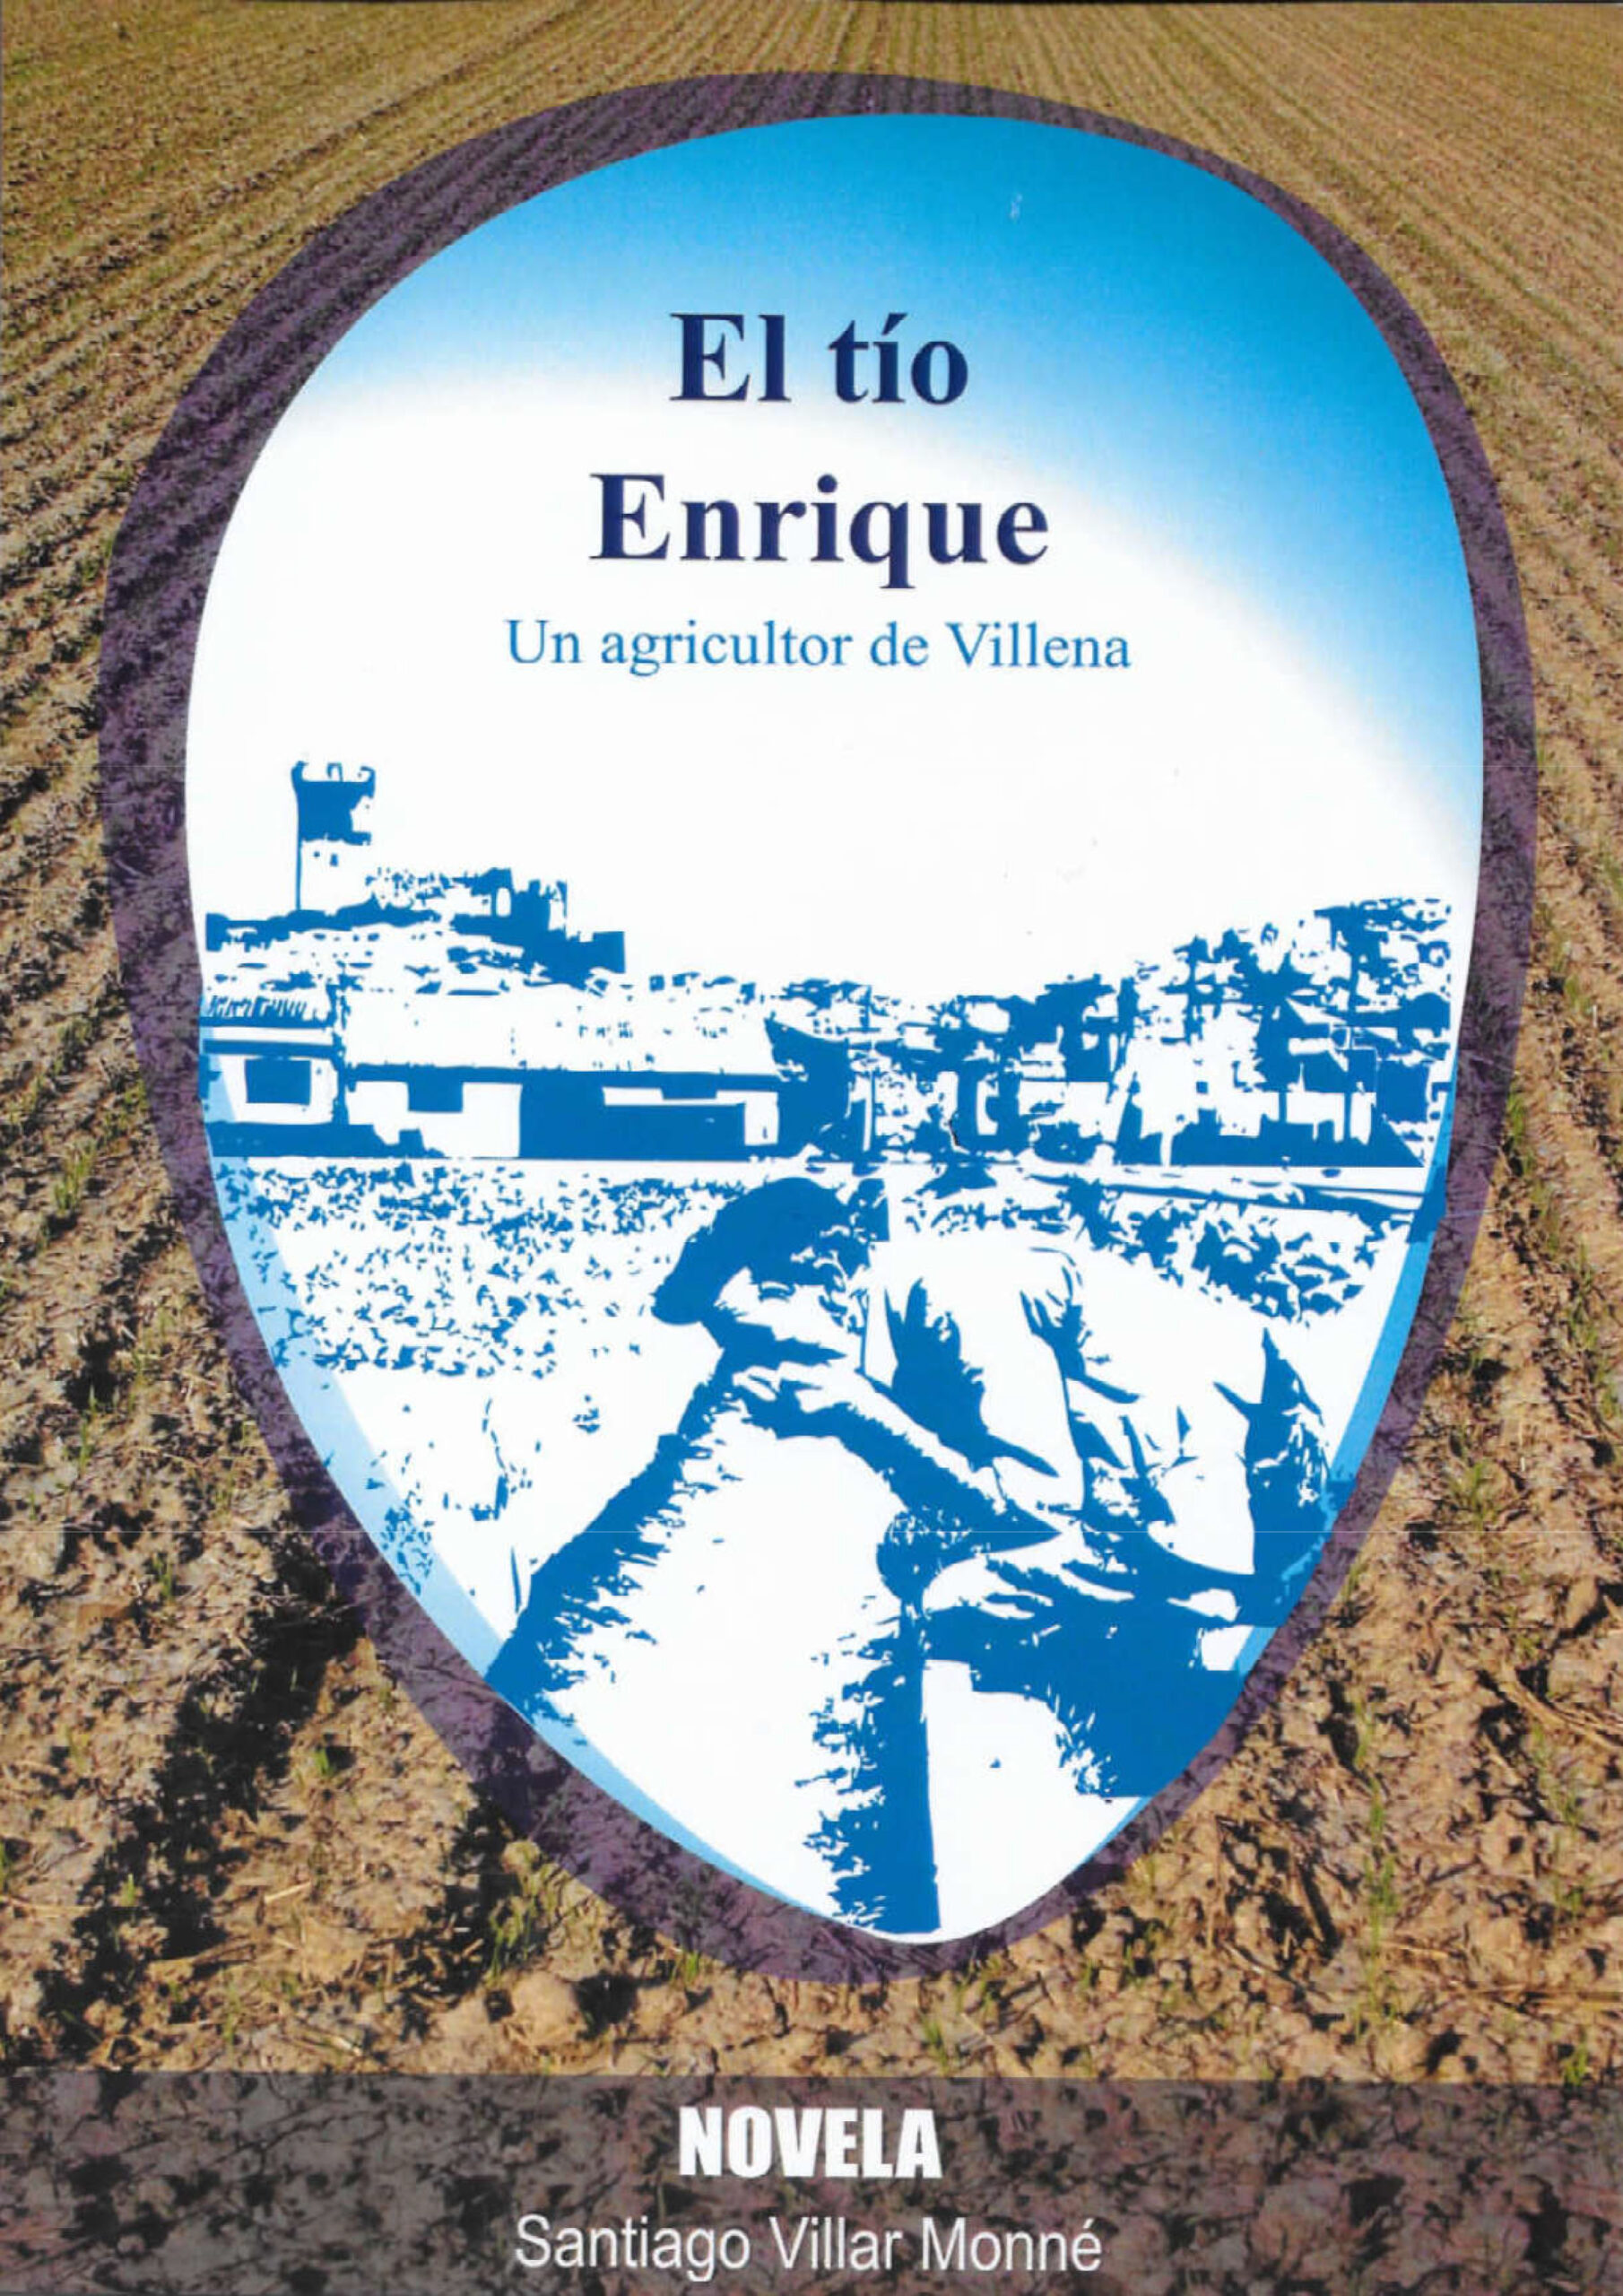 Presentación del libro “El tío Enrique, un agricultor de Villena”